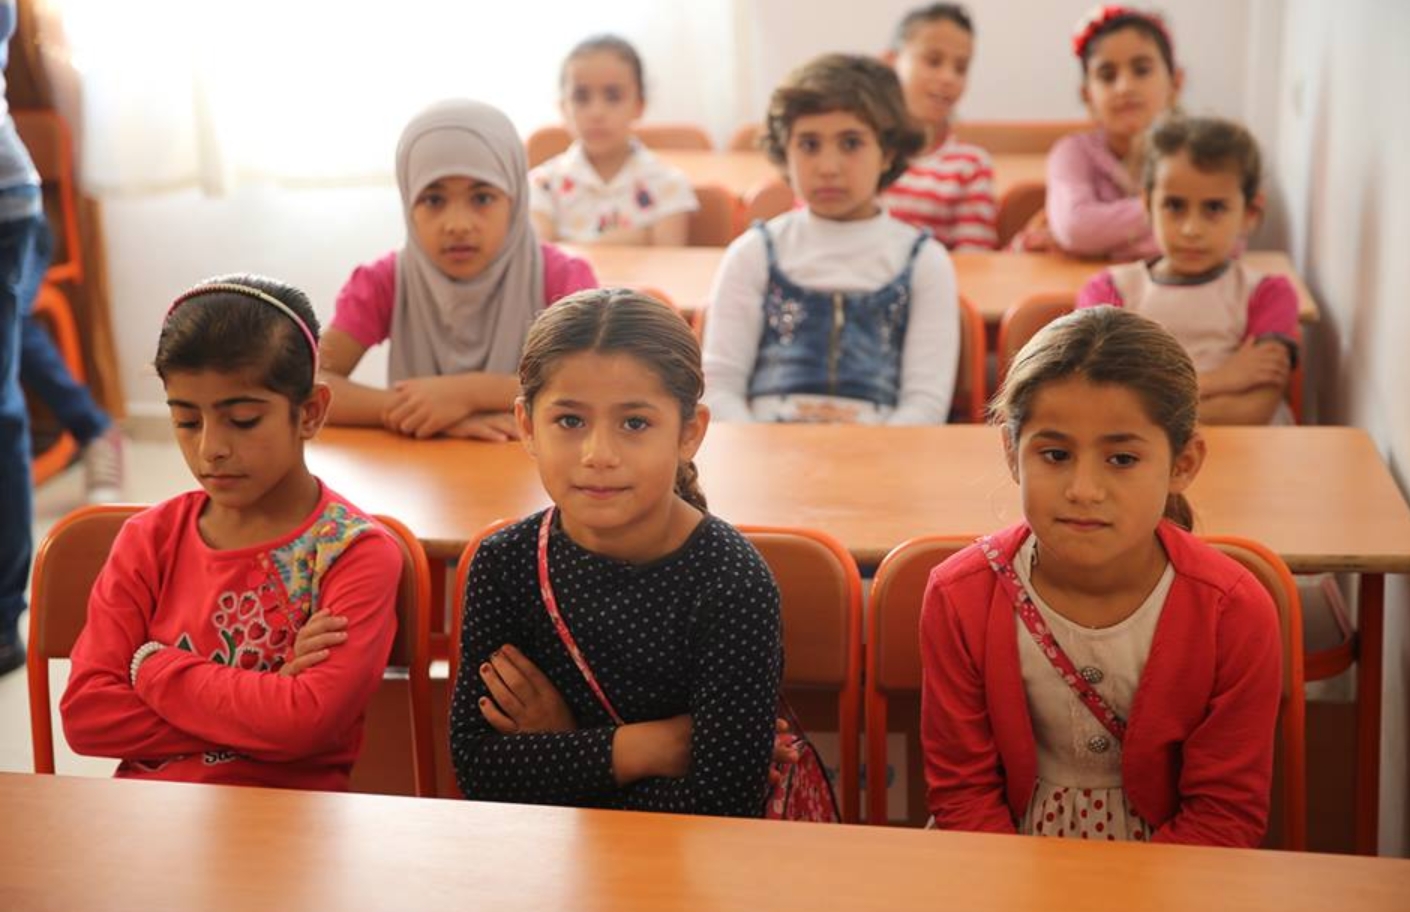 تقرير جديد يكشف عن نتائج مبهرة من عملية دعم دمج الأطفال السوريين بنظام التعليم التركي